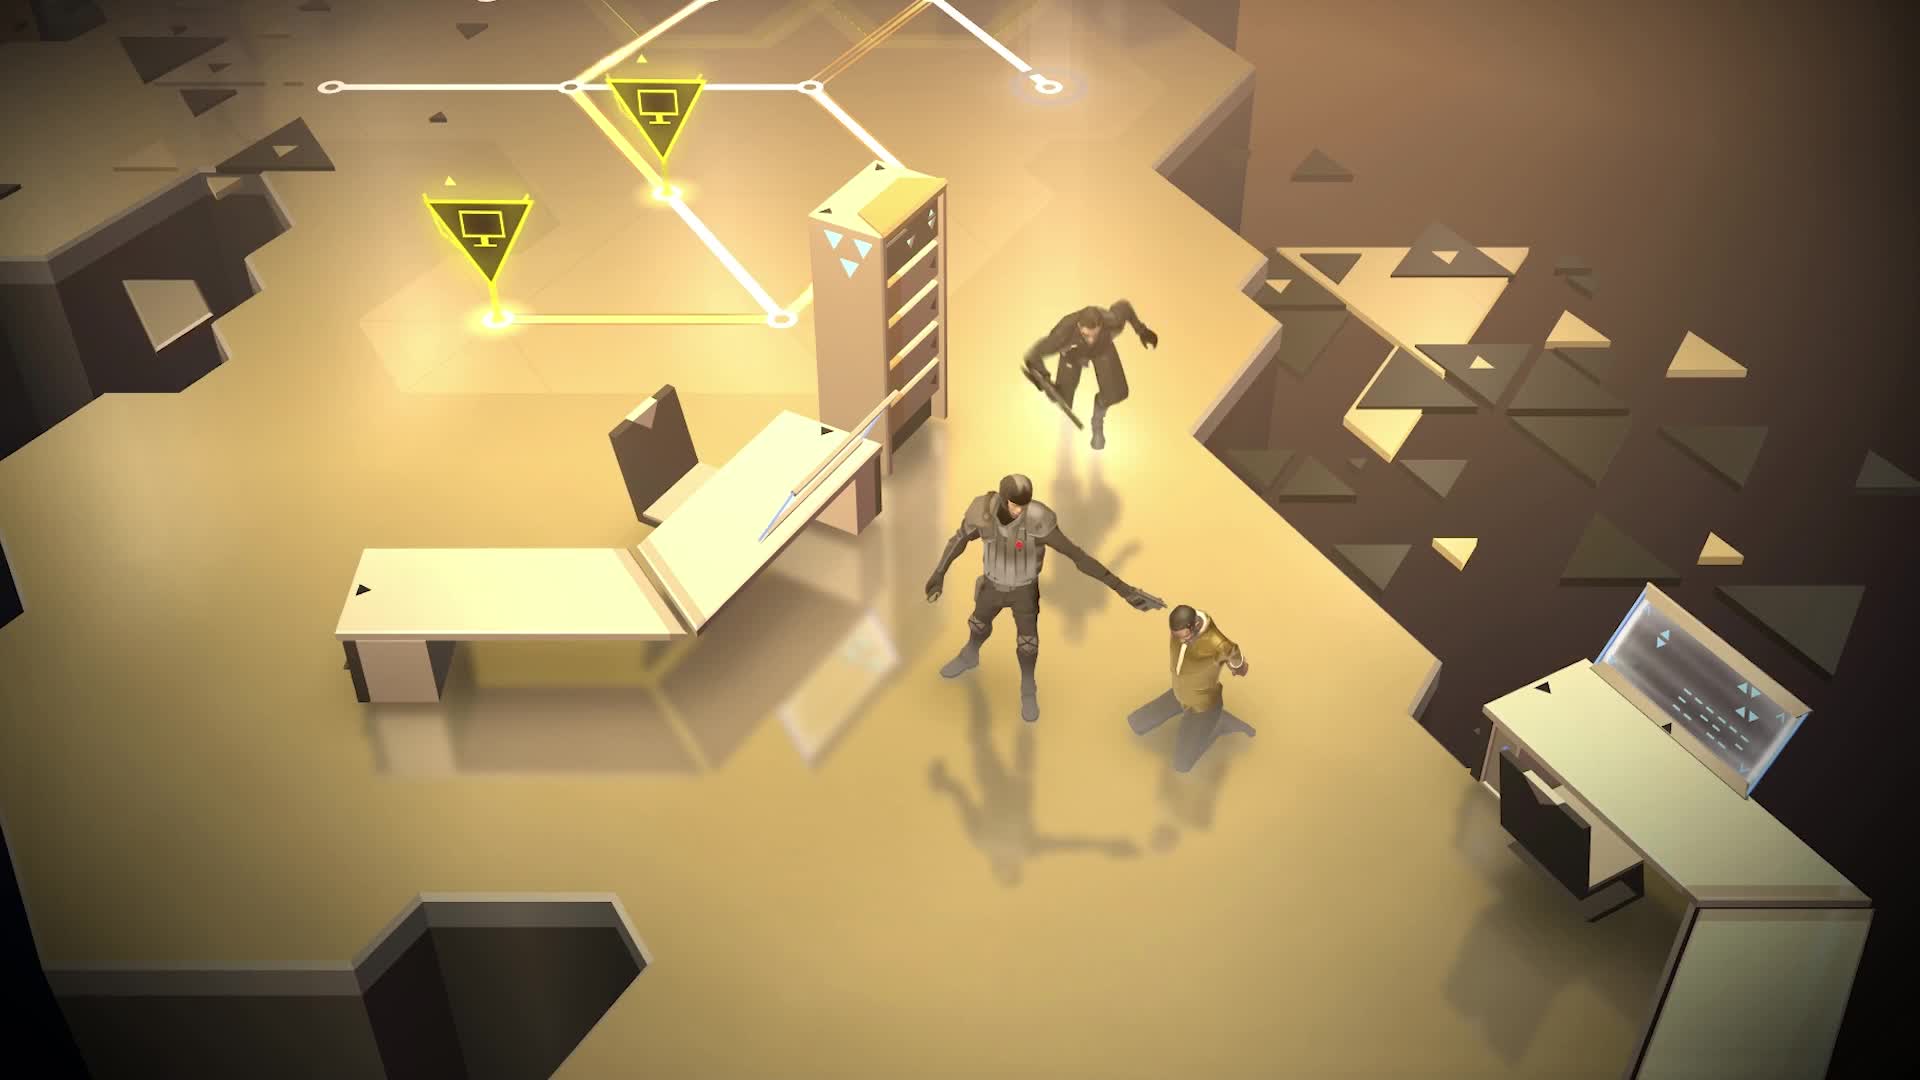 Deus Ex Go - launch trailer